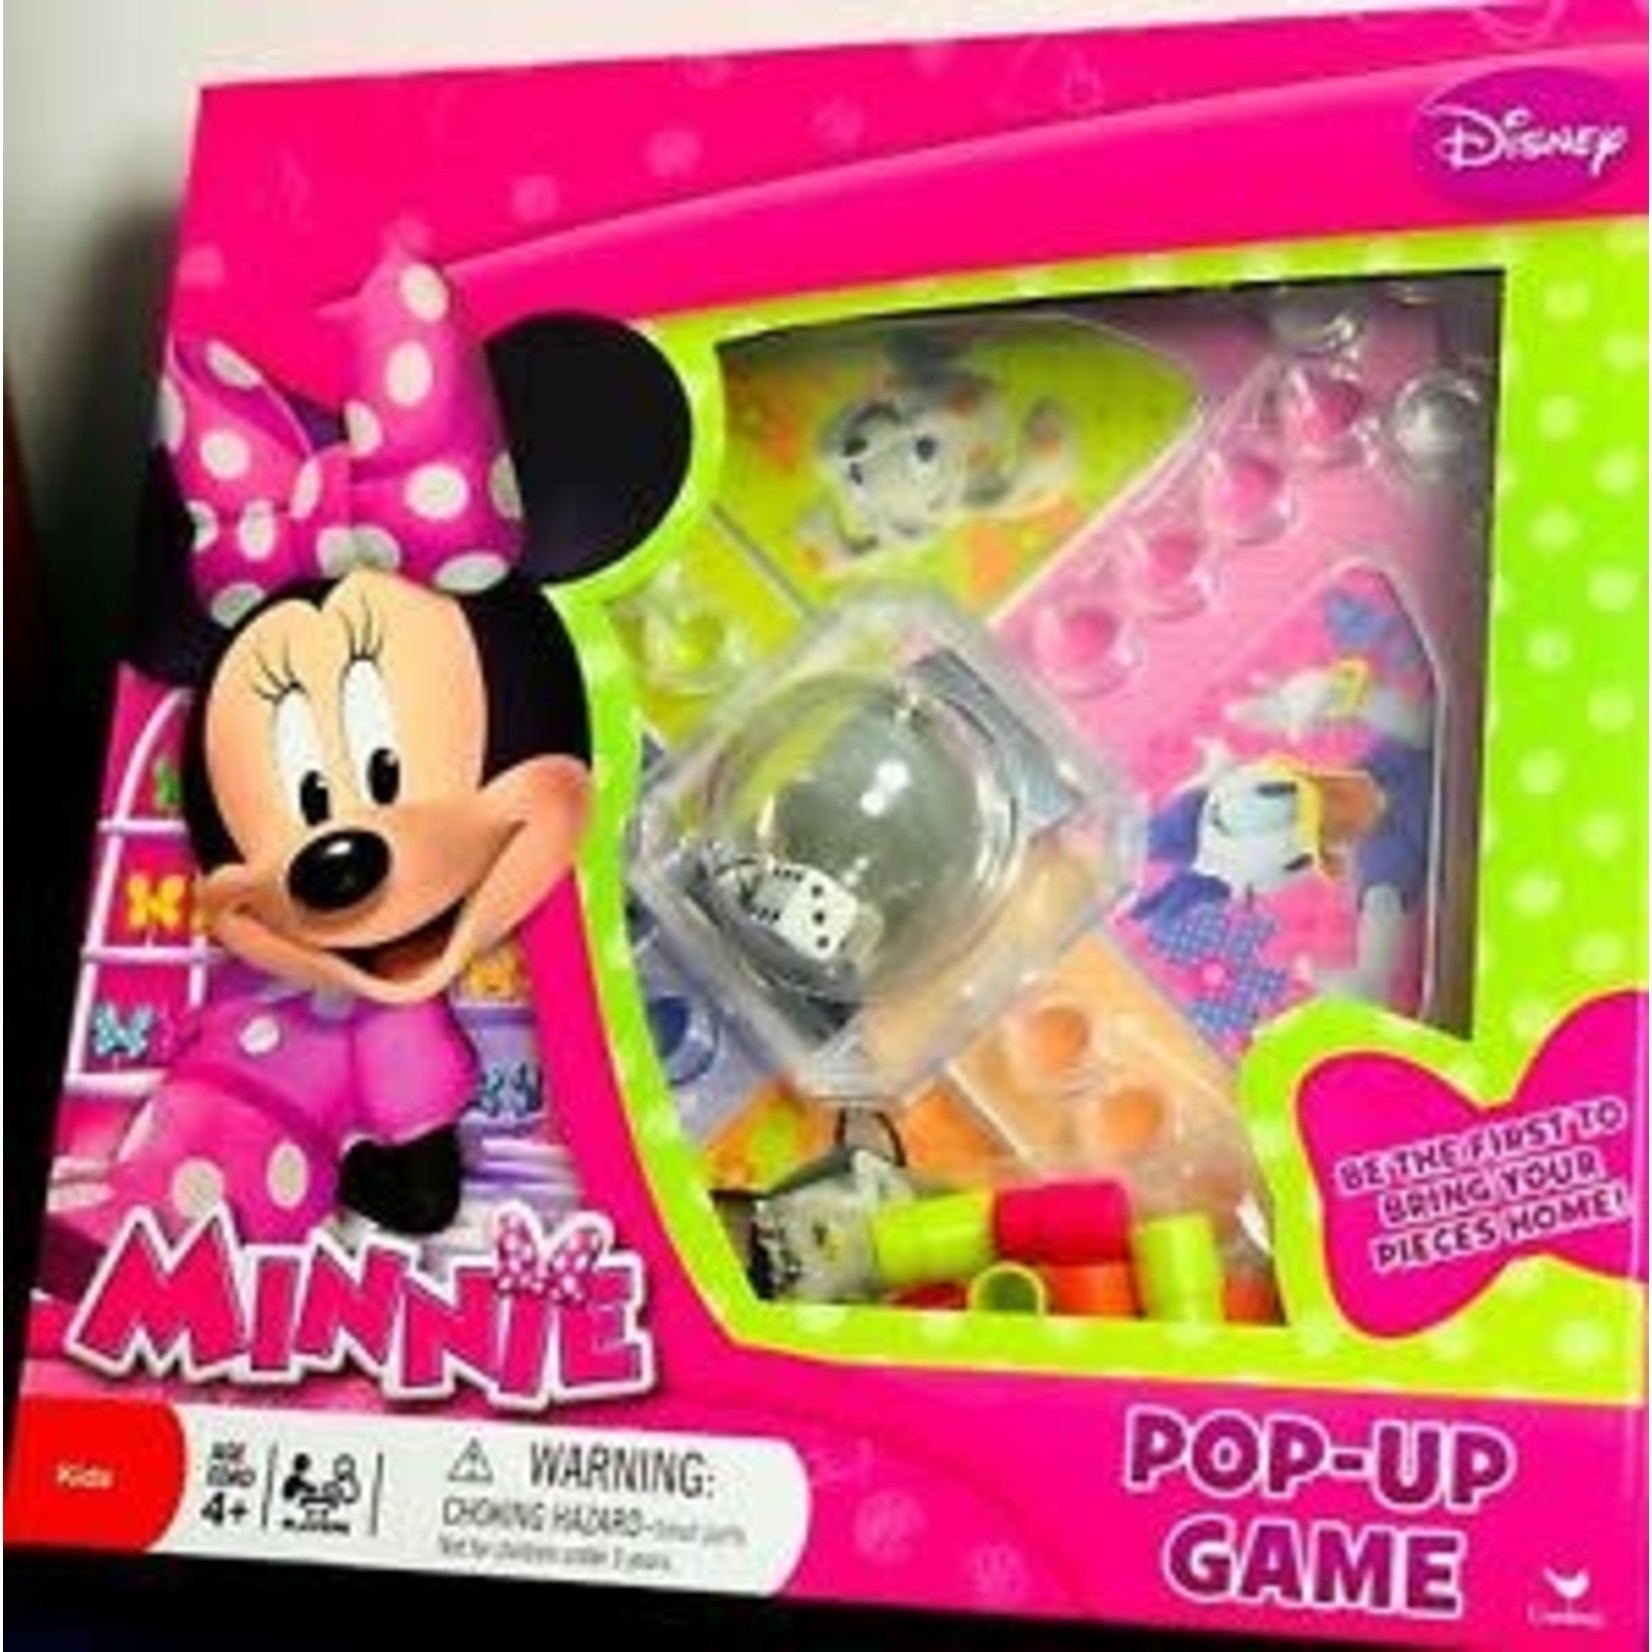 Minnie Junior Pop-Up Game